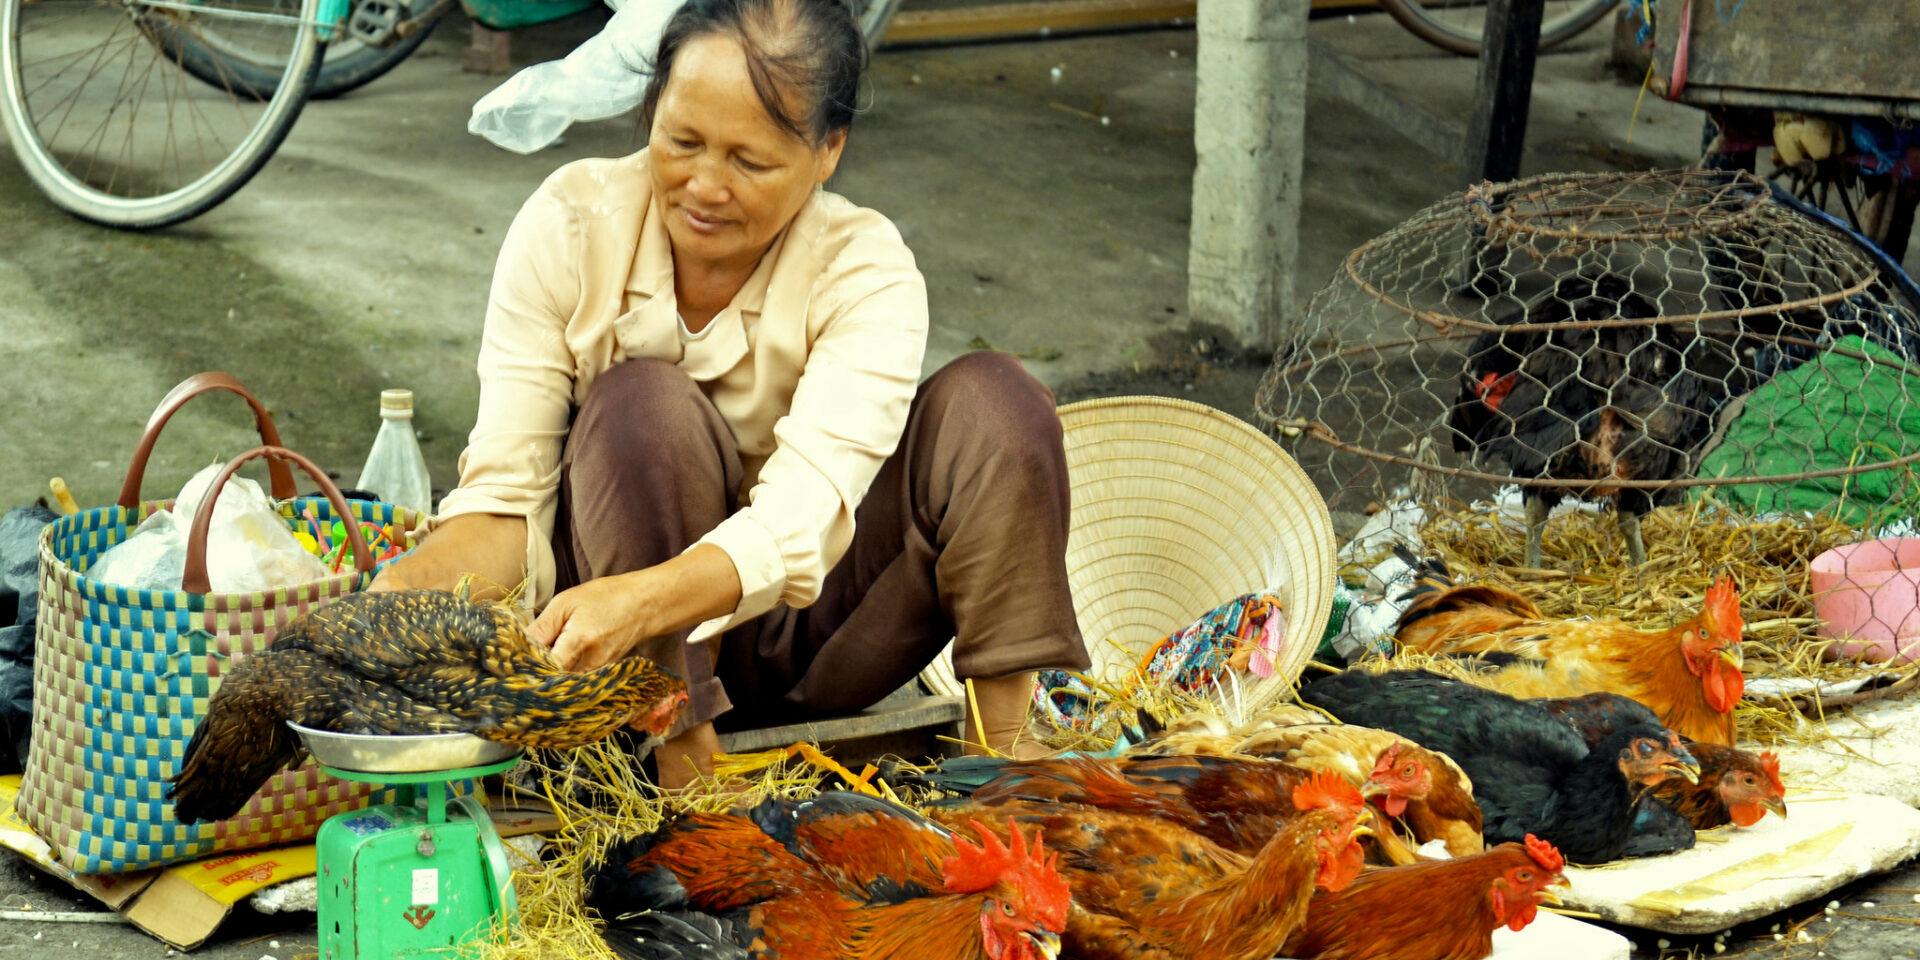 A live chicken vendor weighs a chicken in Hung Yen province, Vietnam (ILRI/Nguyen Ngoc Huyen)